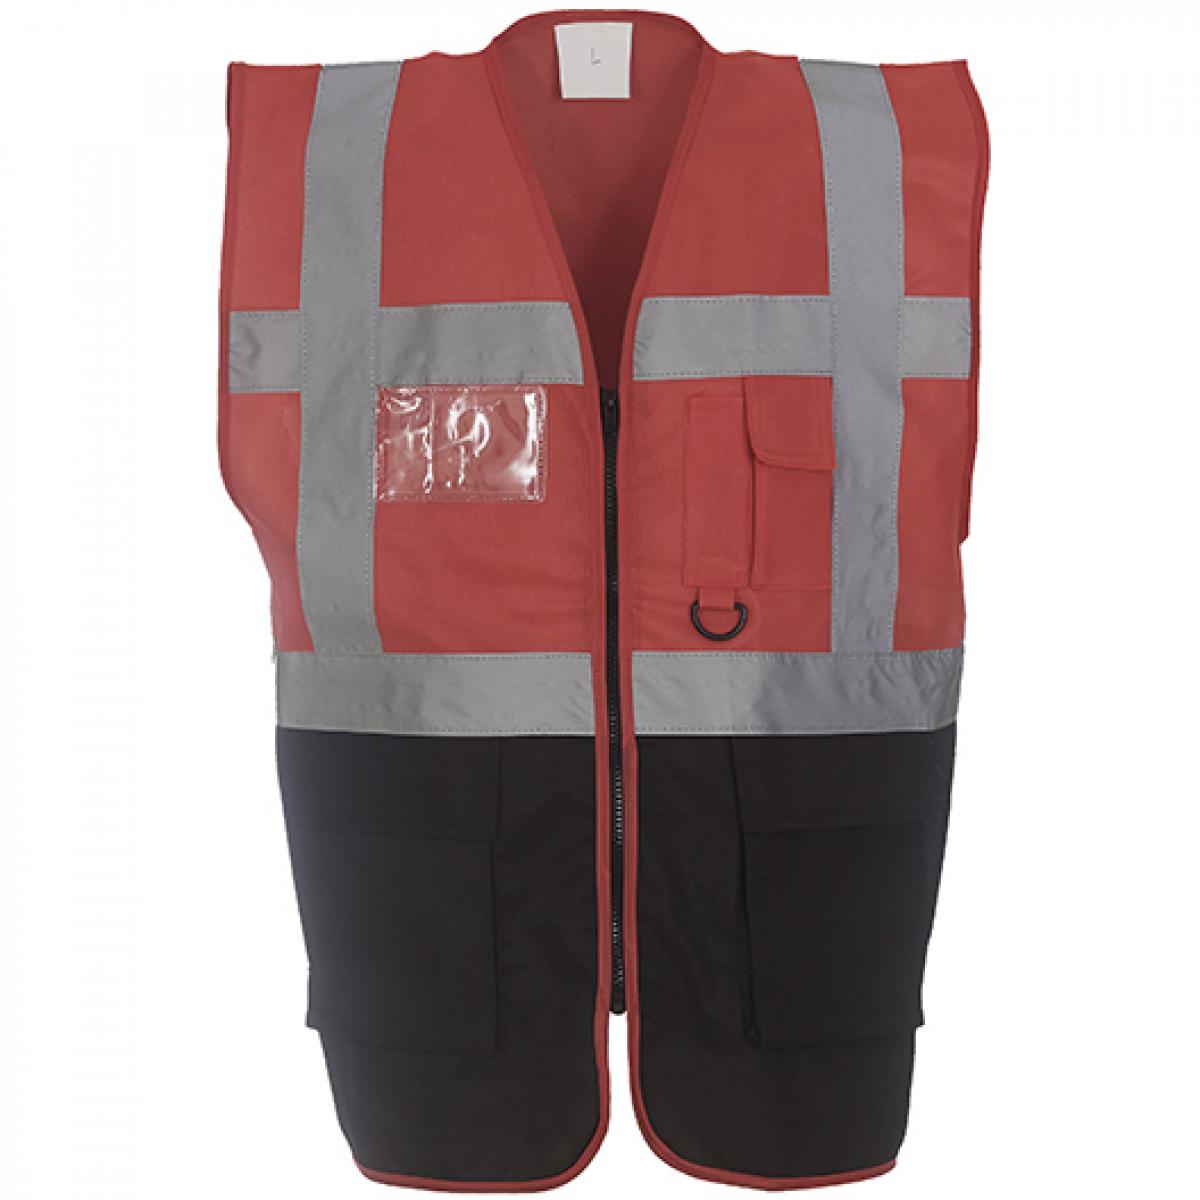 Hersteller: YOKO Herstellernummer: HVW801 Artikelbezeichnung: Herren Multi-Functional Executive Waistcoat Farbe: Red/Black